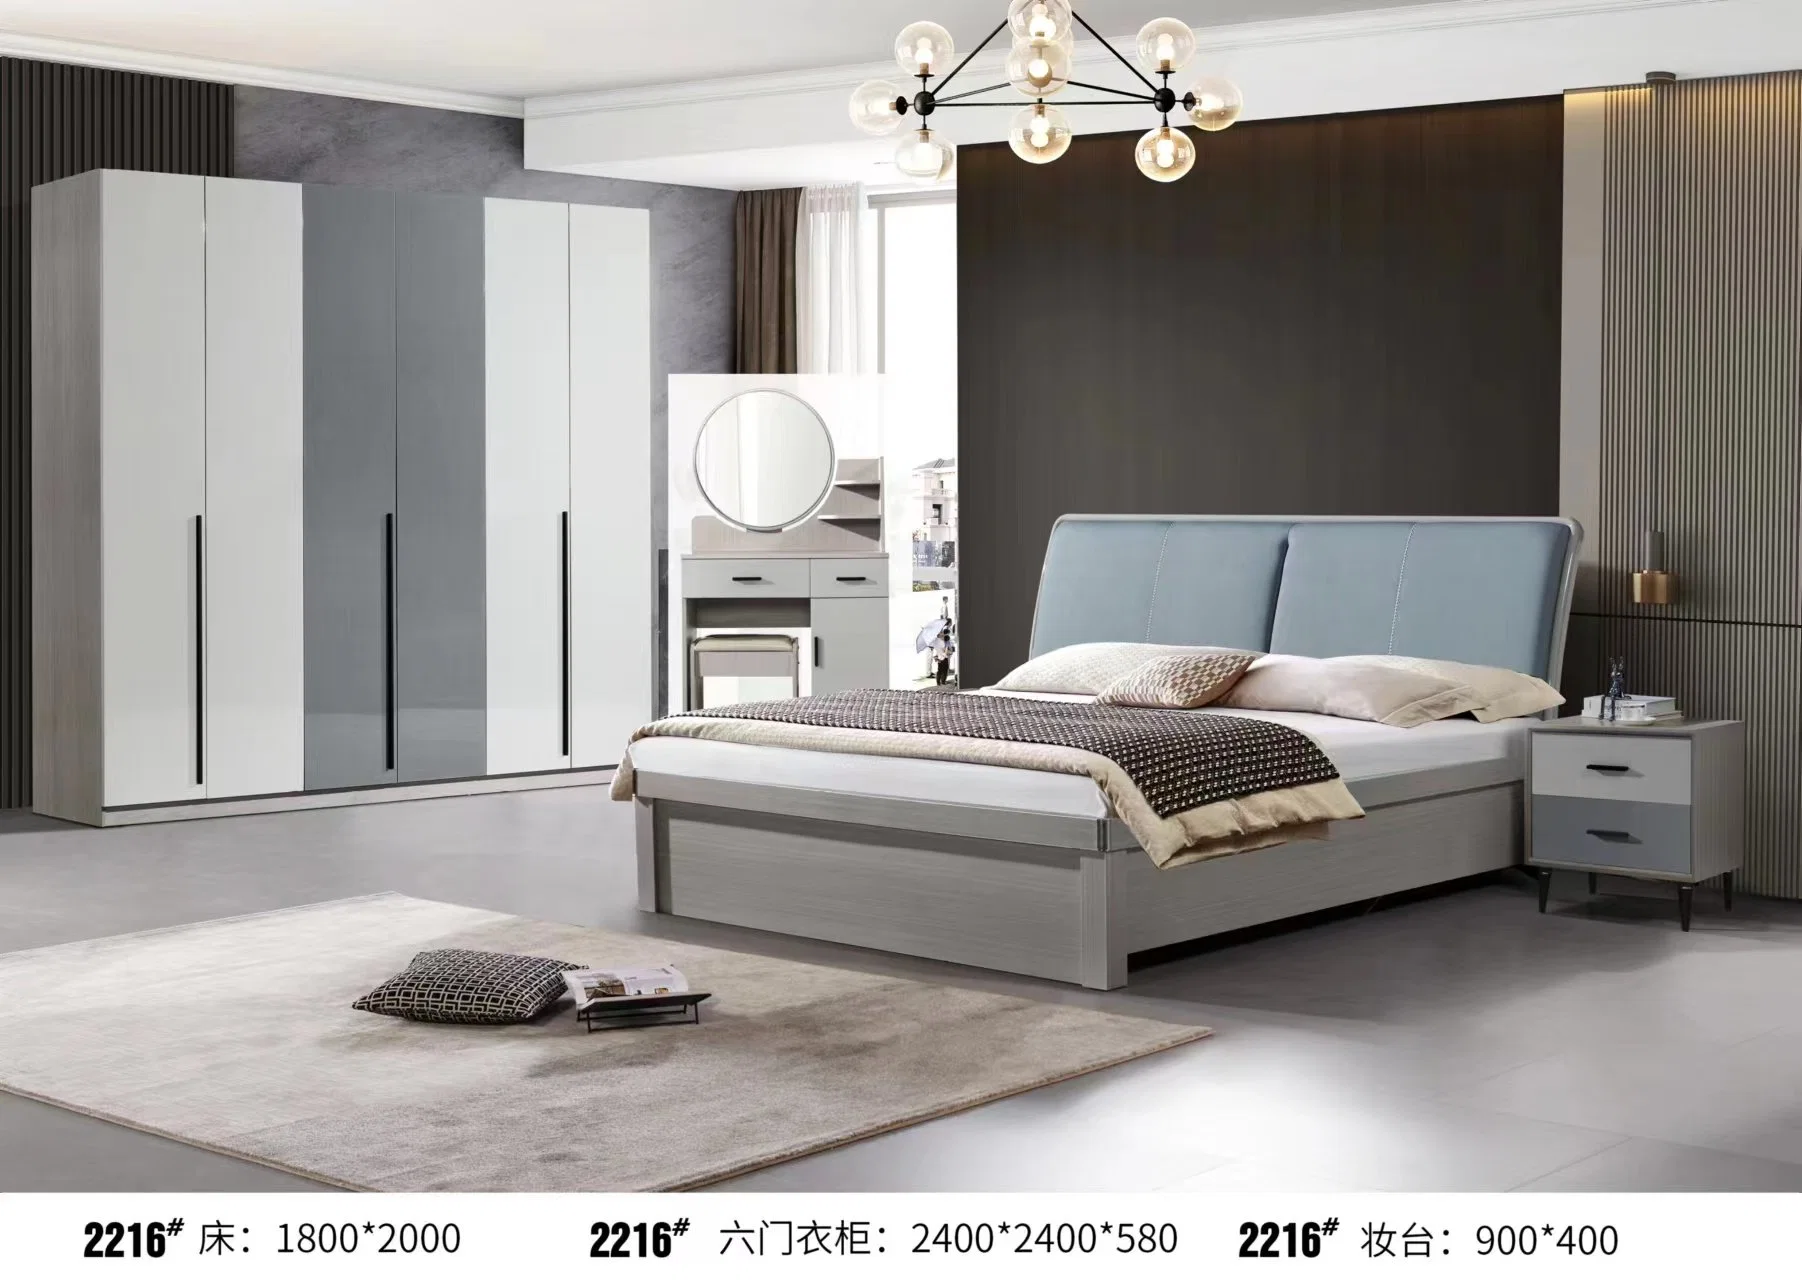 Interieur Luxus Rahmen 1,8 M X 2 M Hauptschlafzimmer Modernes Minimalistisches Doppelzimmer Mit Minimalistischem Italienischen Doppelbett